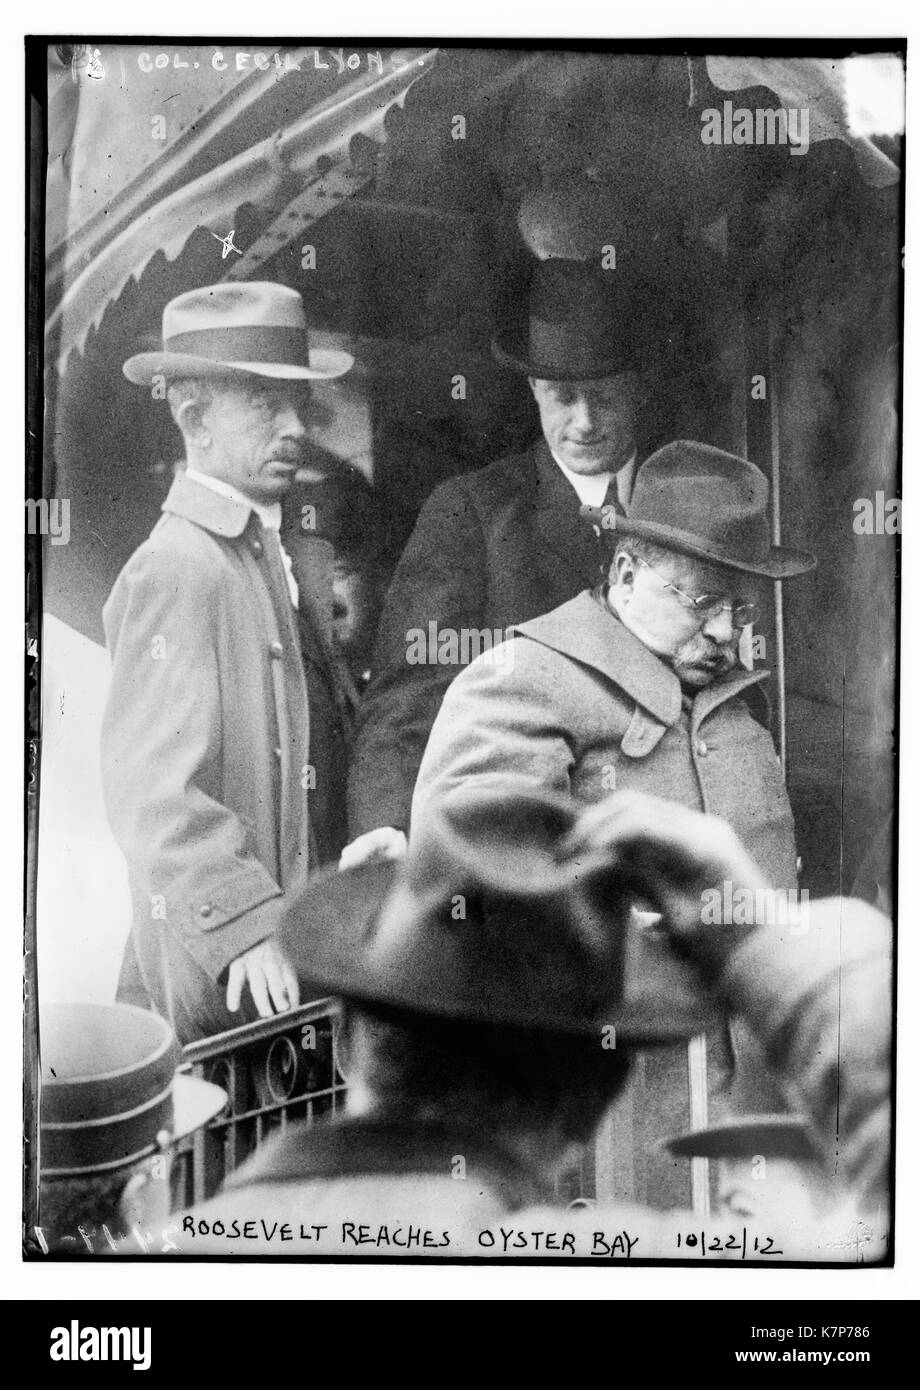 La foto muestra el presidente Teddy Roosevelt bajarnos de un tren en Oyster Bay, Long Island, a raíz de un intento de asesinato por John F. Schrank. El Coronel Cecil Lyon está detrás de él en el tren. 10/22/12. Foto de stock